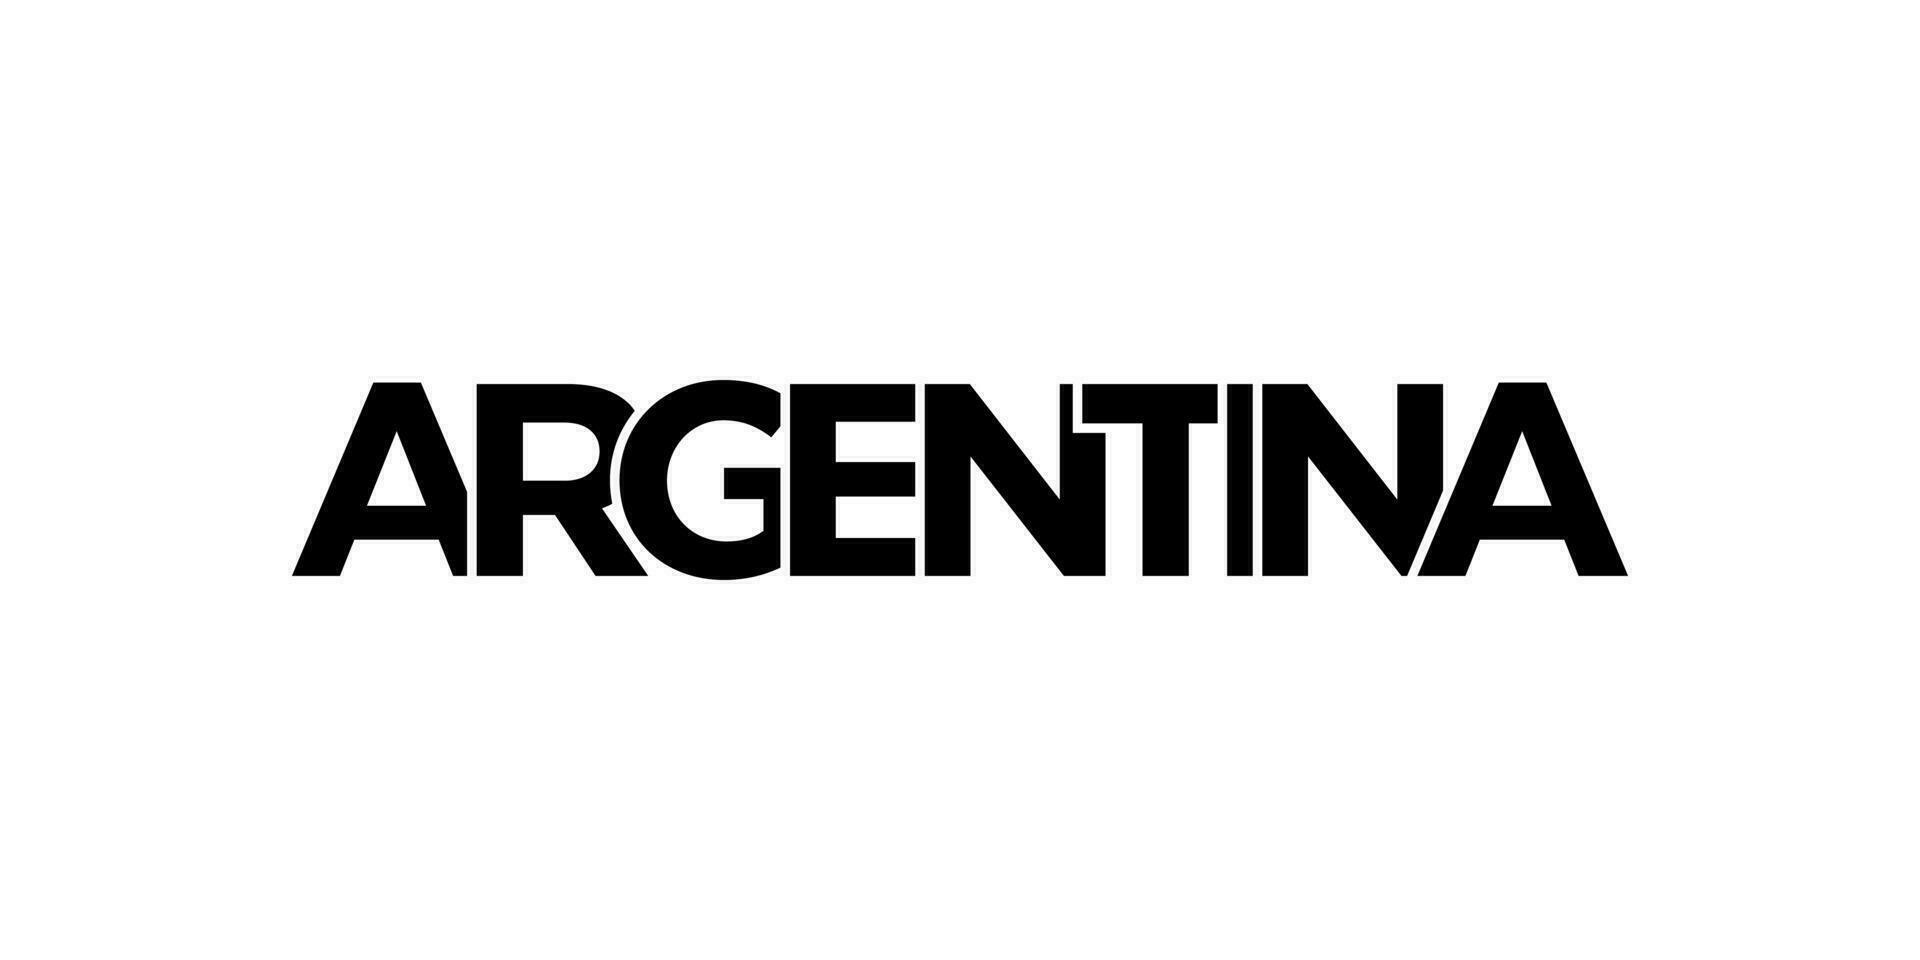 Argentinië embleem. de ontwerp Kenmerken een meetkundig stijl, vector illustratie met stoutmoedig typografie in een modern lettertype. de grafisch leuze belettering.